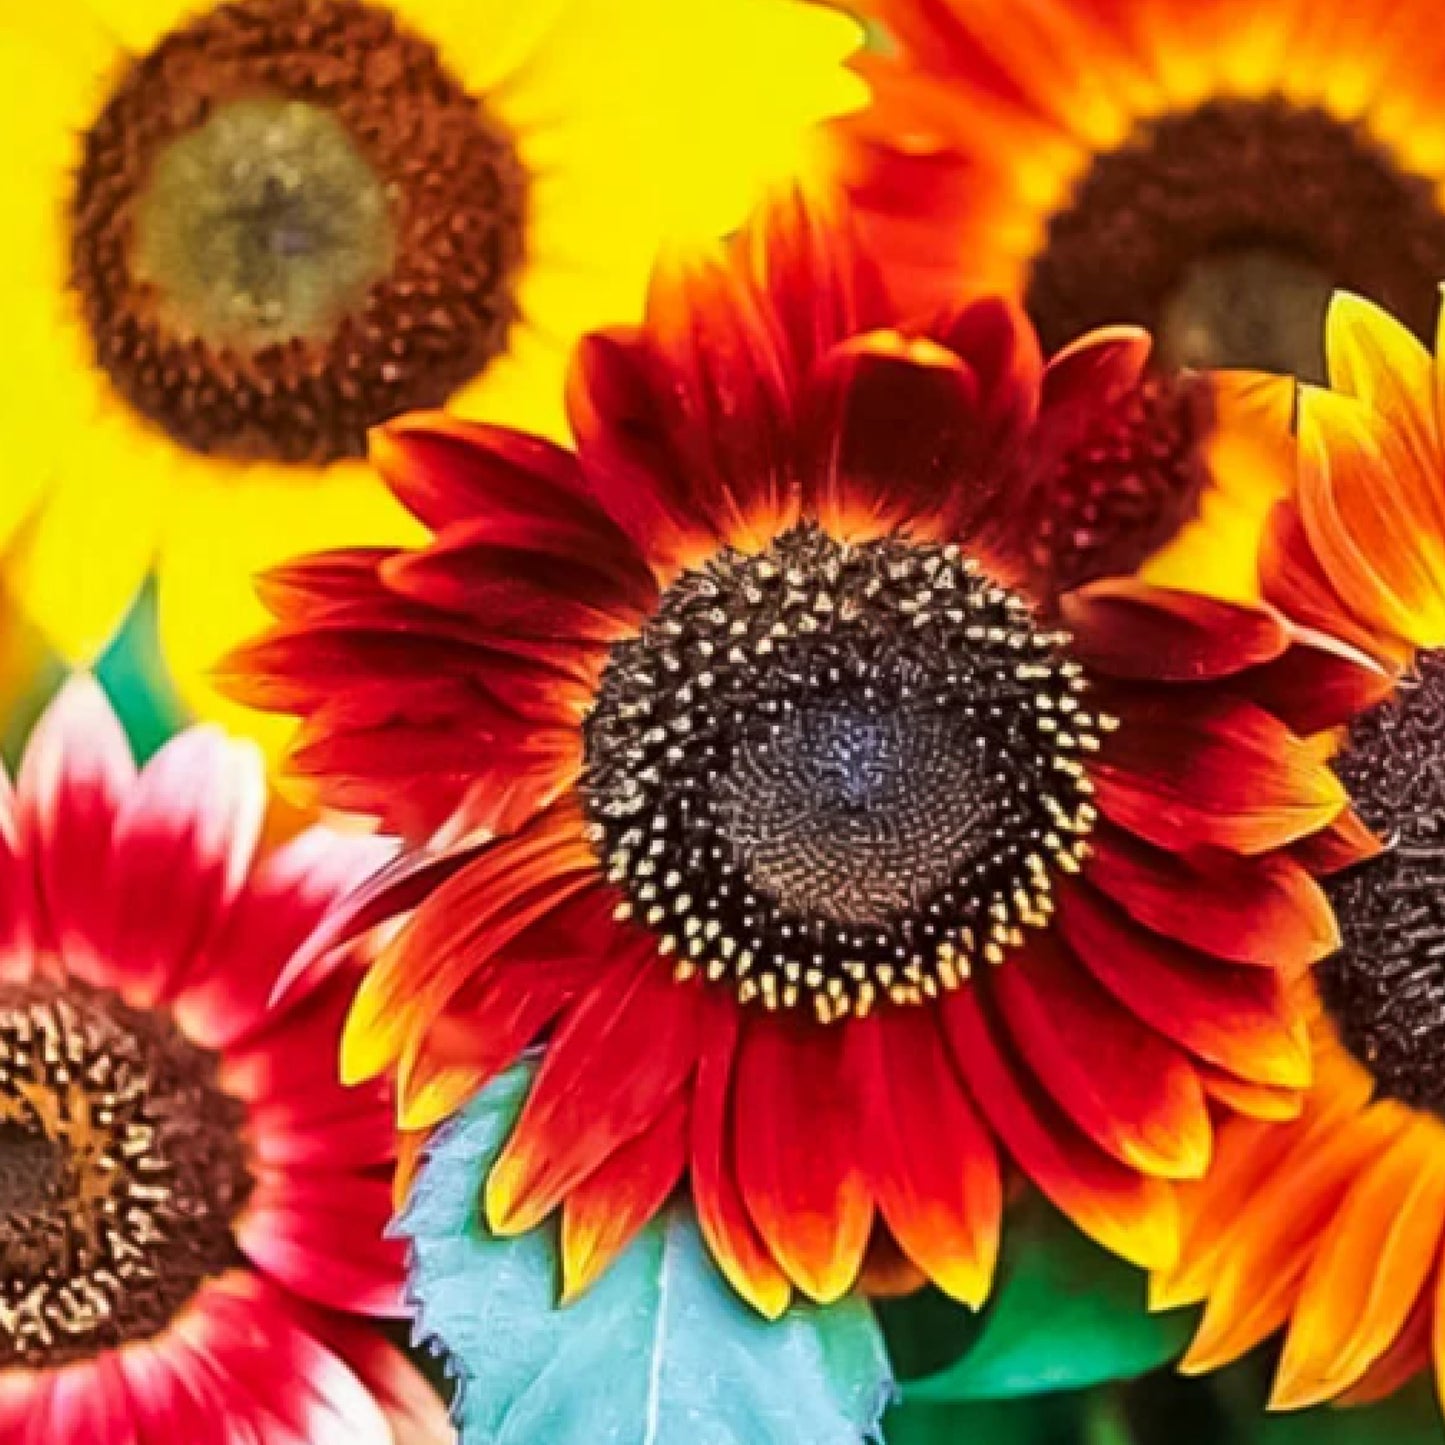 Autumn Beauty Sunflower Seeds - Organic - Non Gmo - Heirloom Seeds – Flower Seeds - USA Garden Seeds